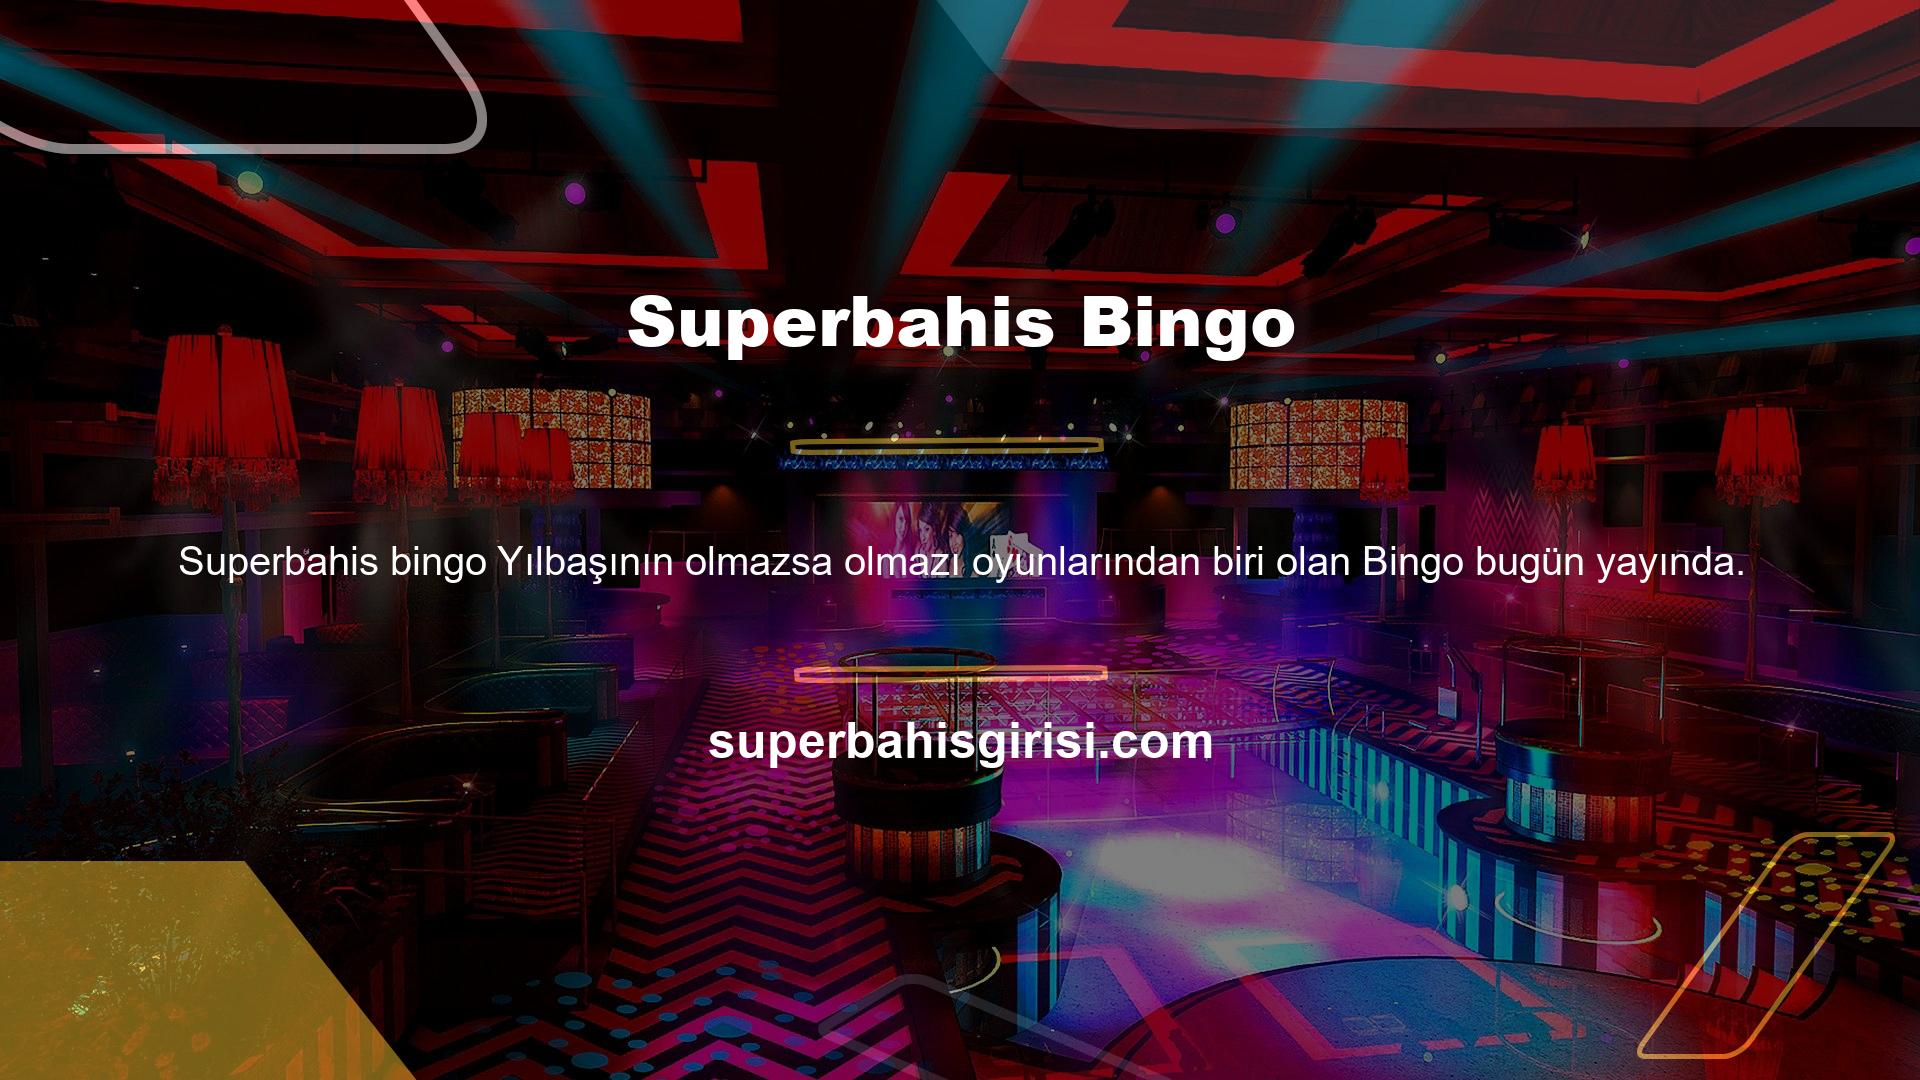 Çevrimiçi bingo oynayarak gerçek para kazanmak istiyorsanız Superbahis Bingo sizi bekliyor